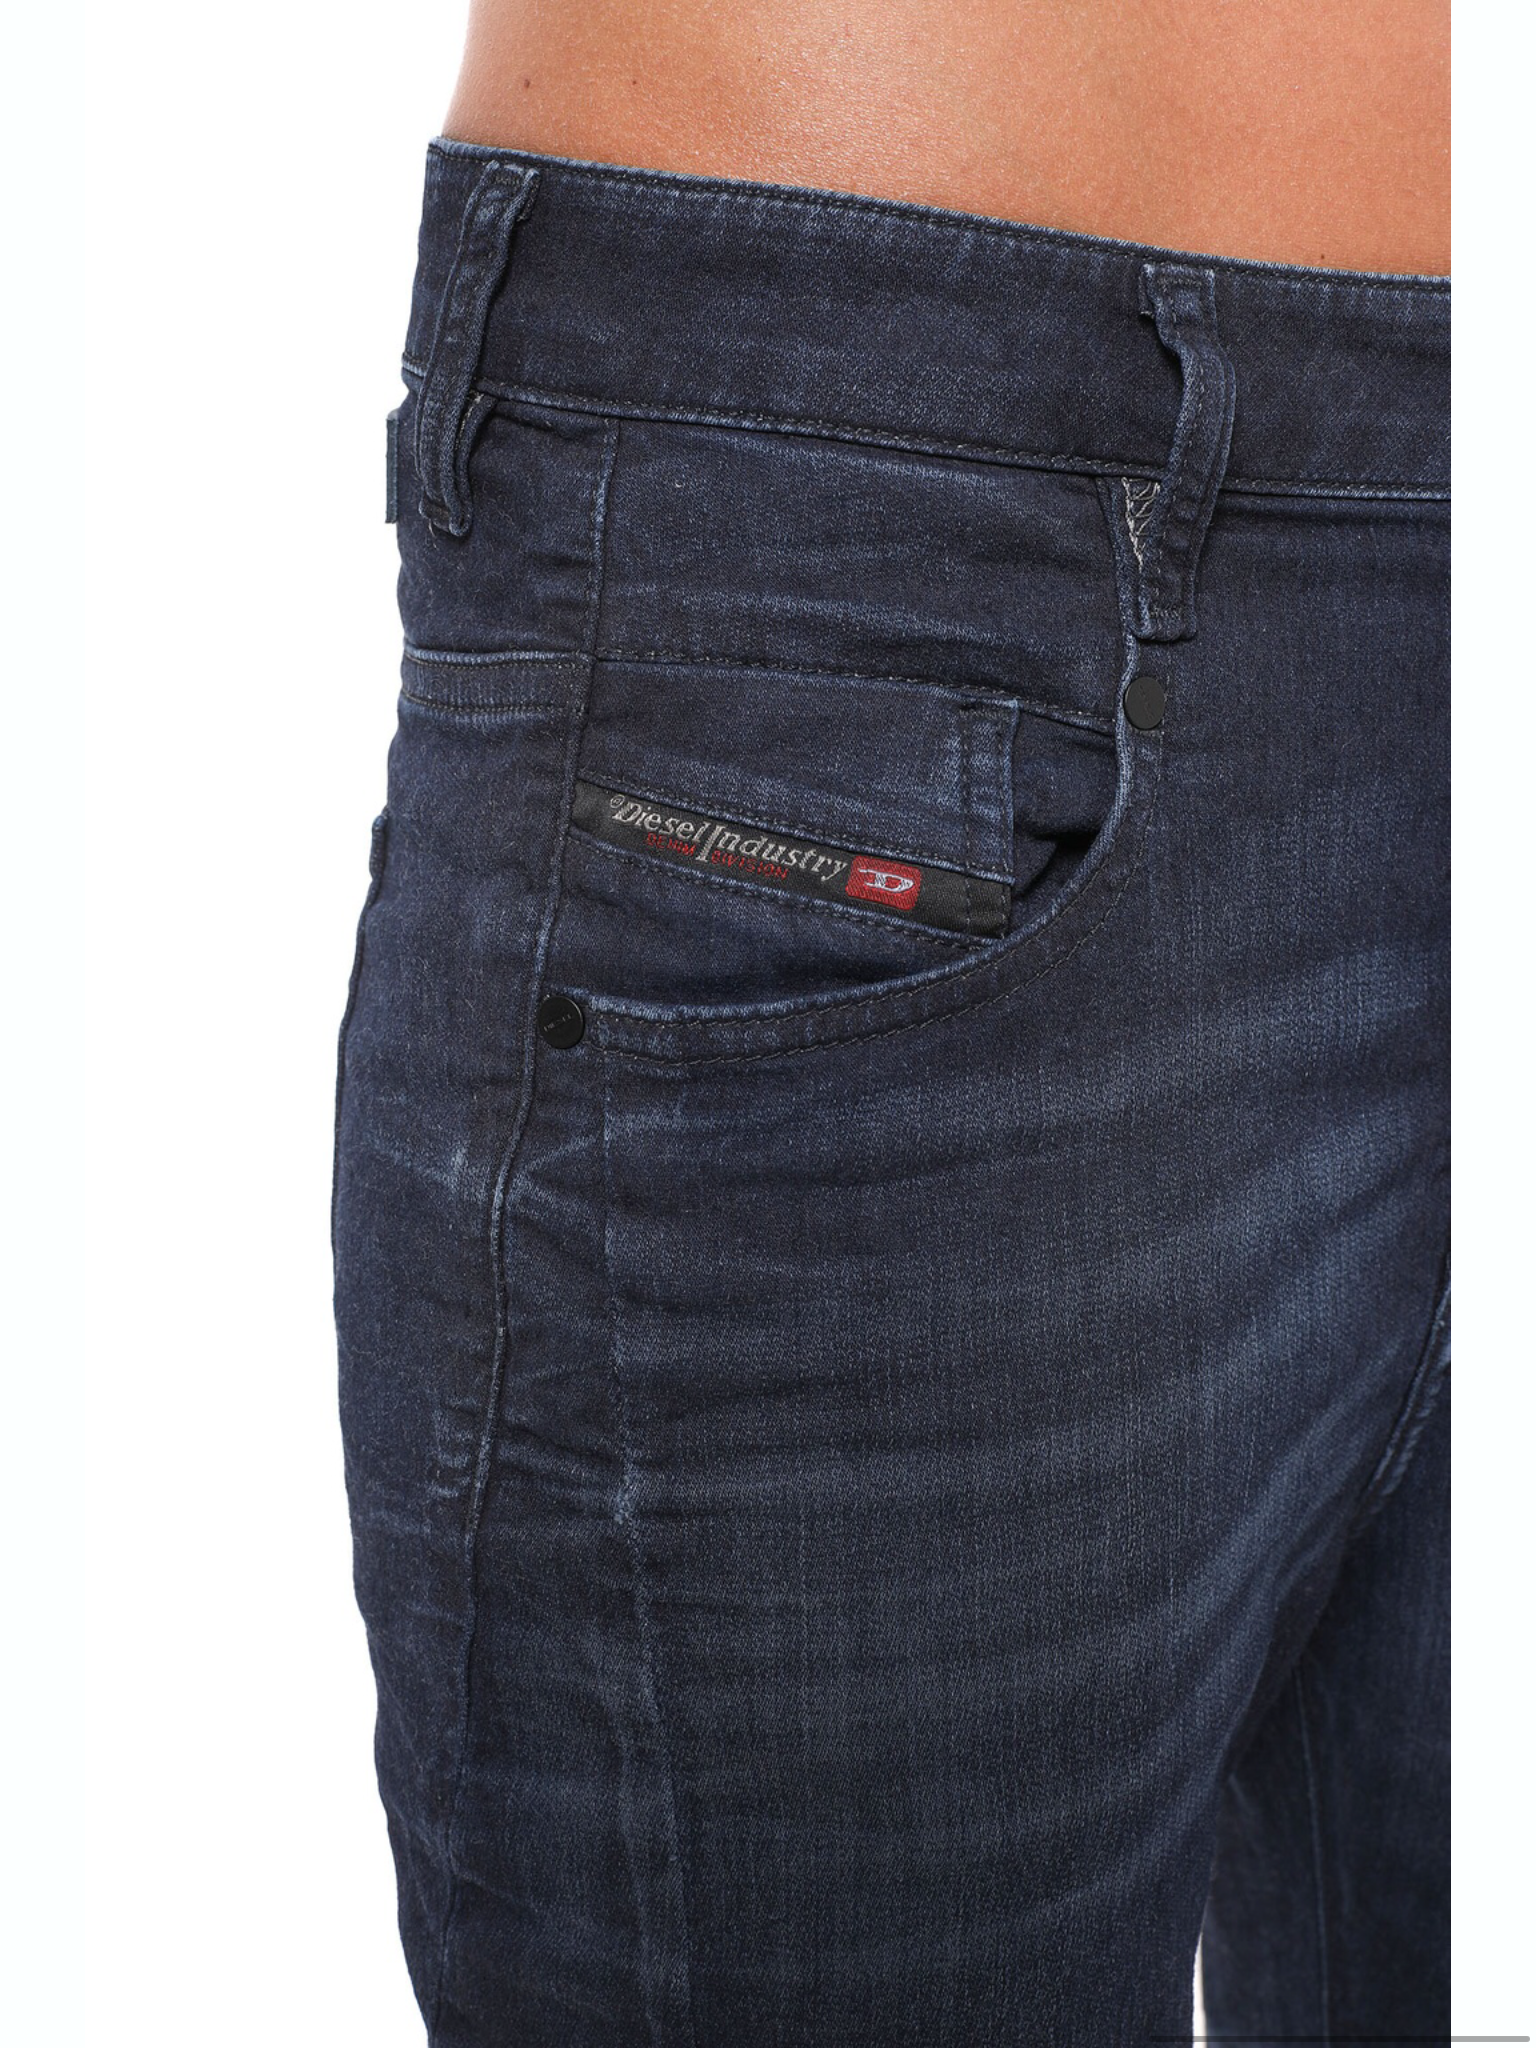 Diesel Fayza L.32 Trouser - Jeans : Diahann Boutique - Diesel W20